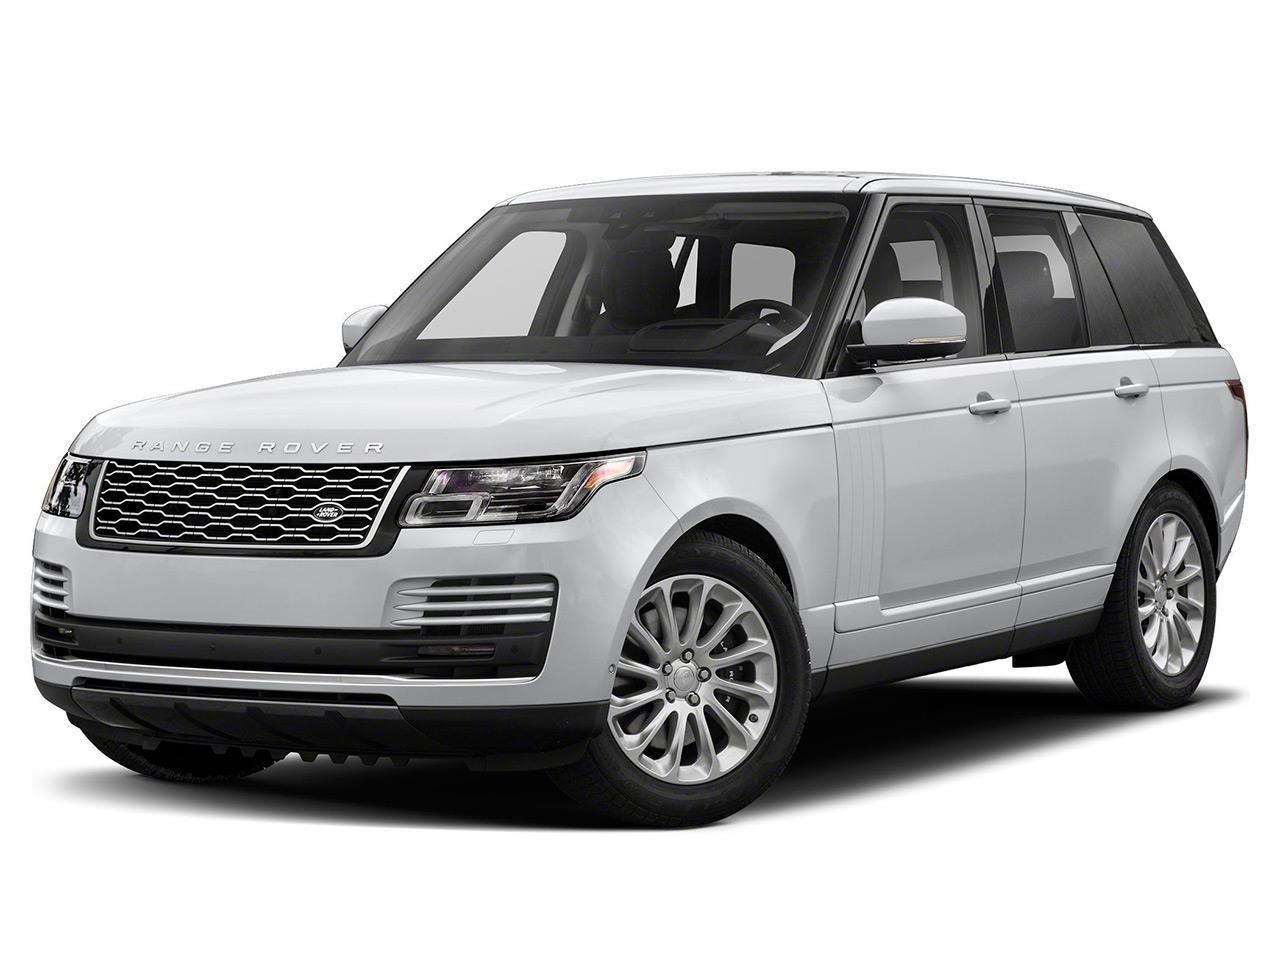 Land Rover Range Rover nuevo 0km, precios y cotizaciones.